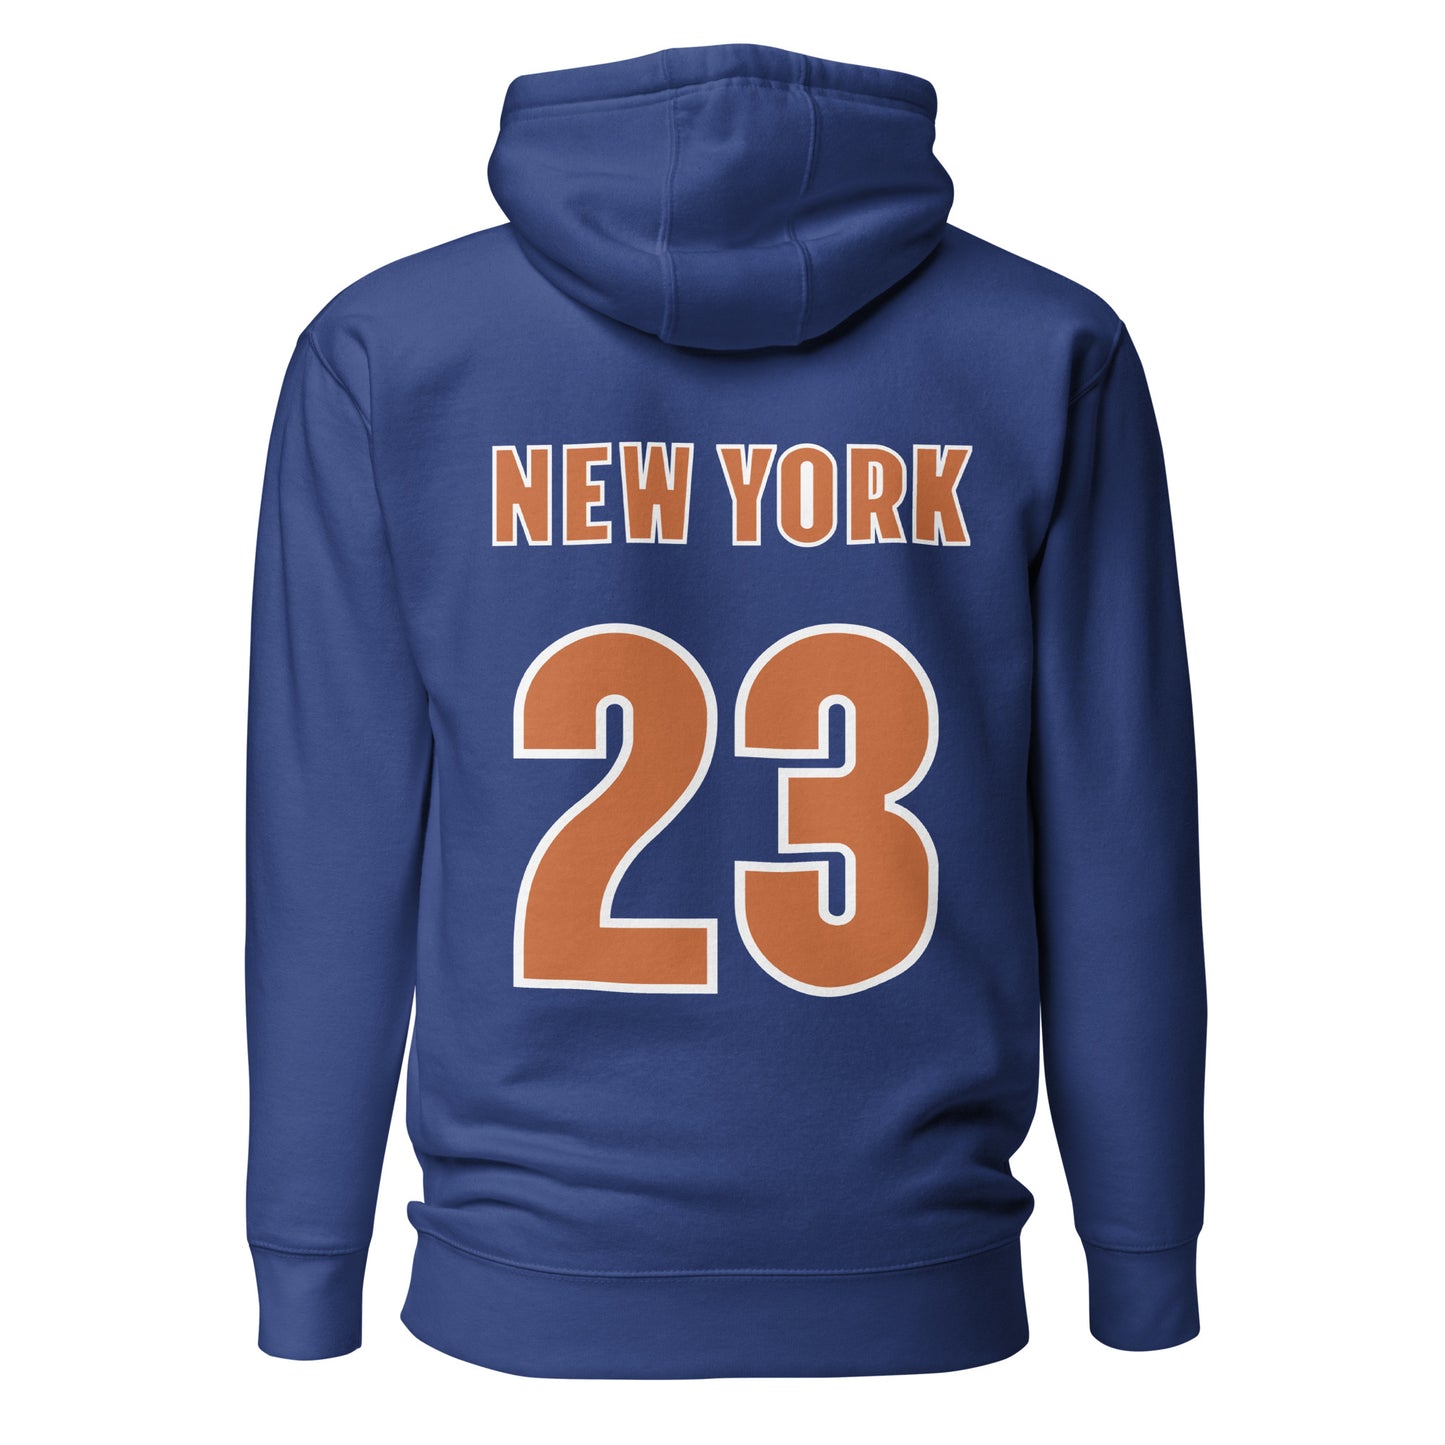 gym - hoodies for men - hoodies - newyork - 23 - workout - unisex hoodies - tshirts - tees - men tshirts